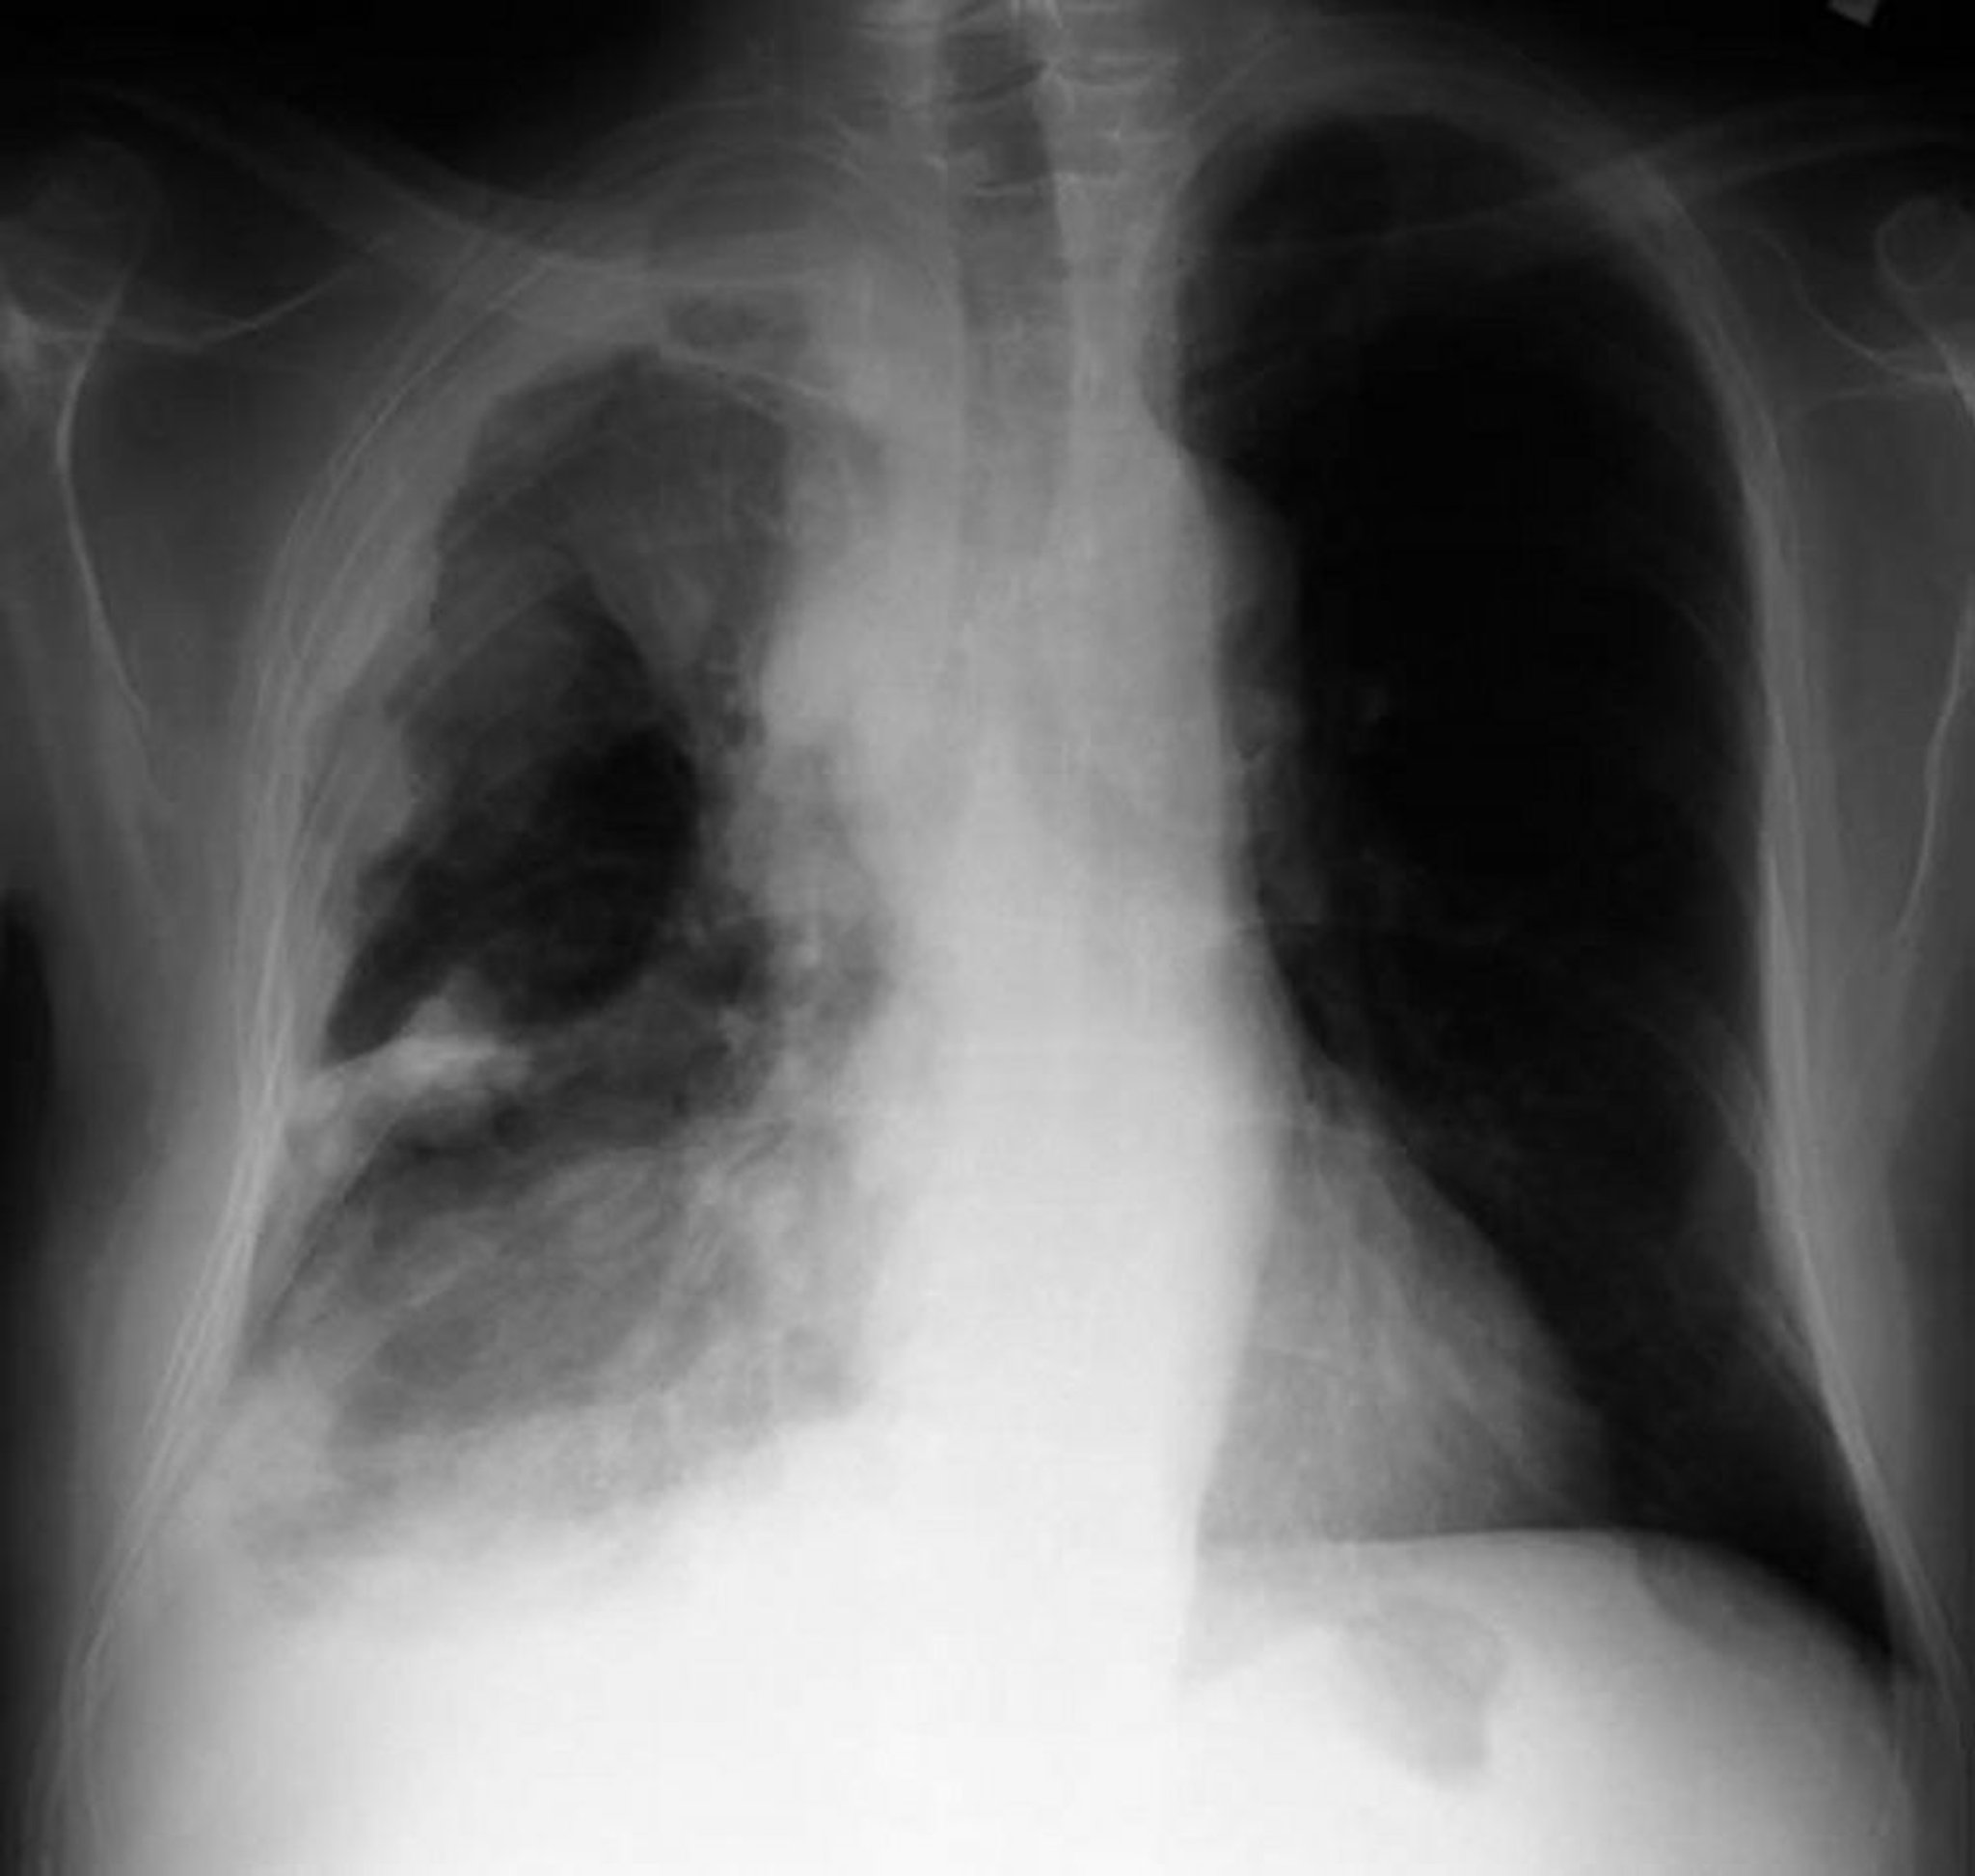 U trung biểu mô màng phổi